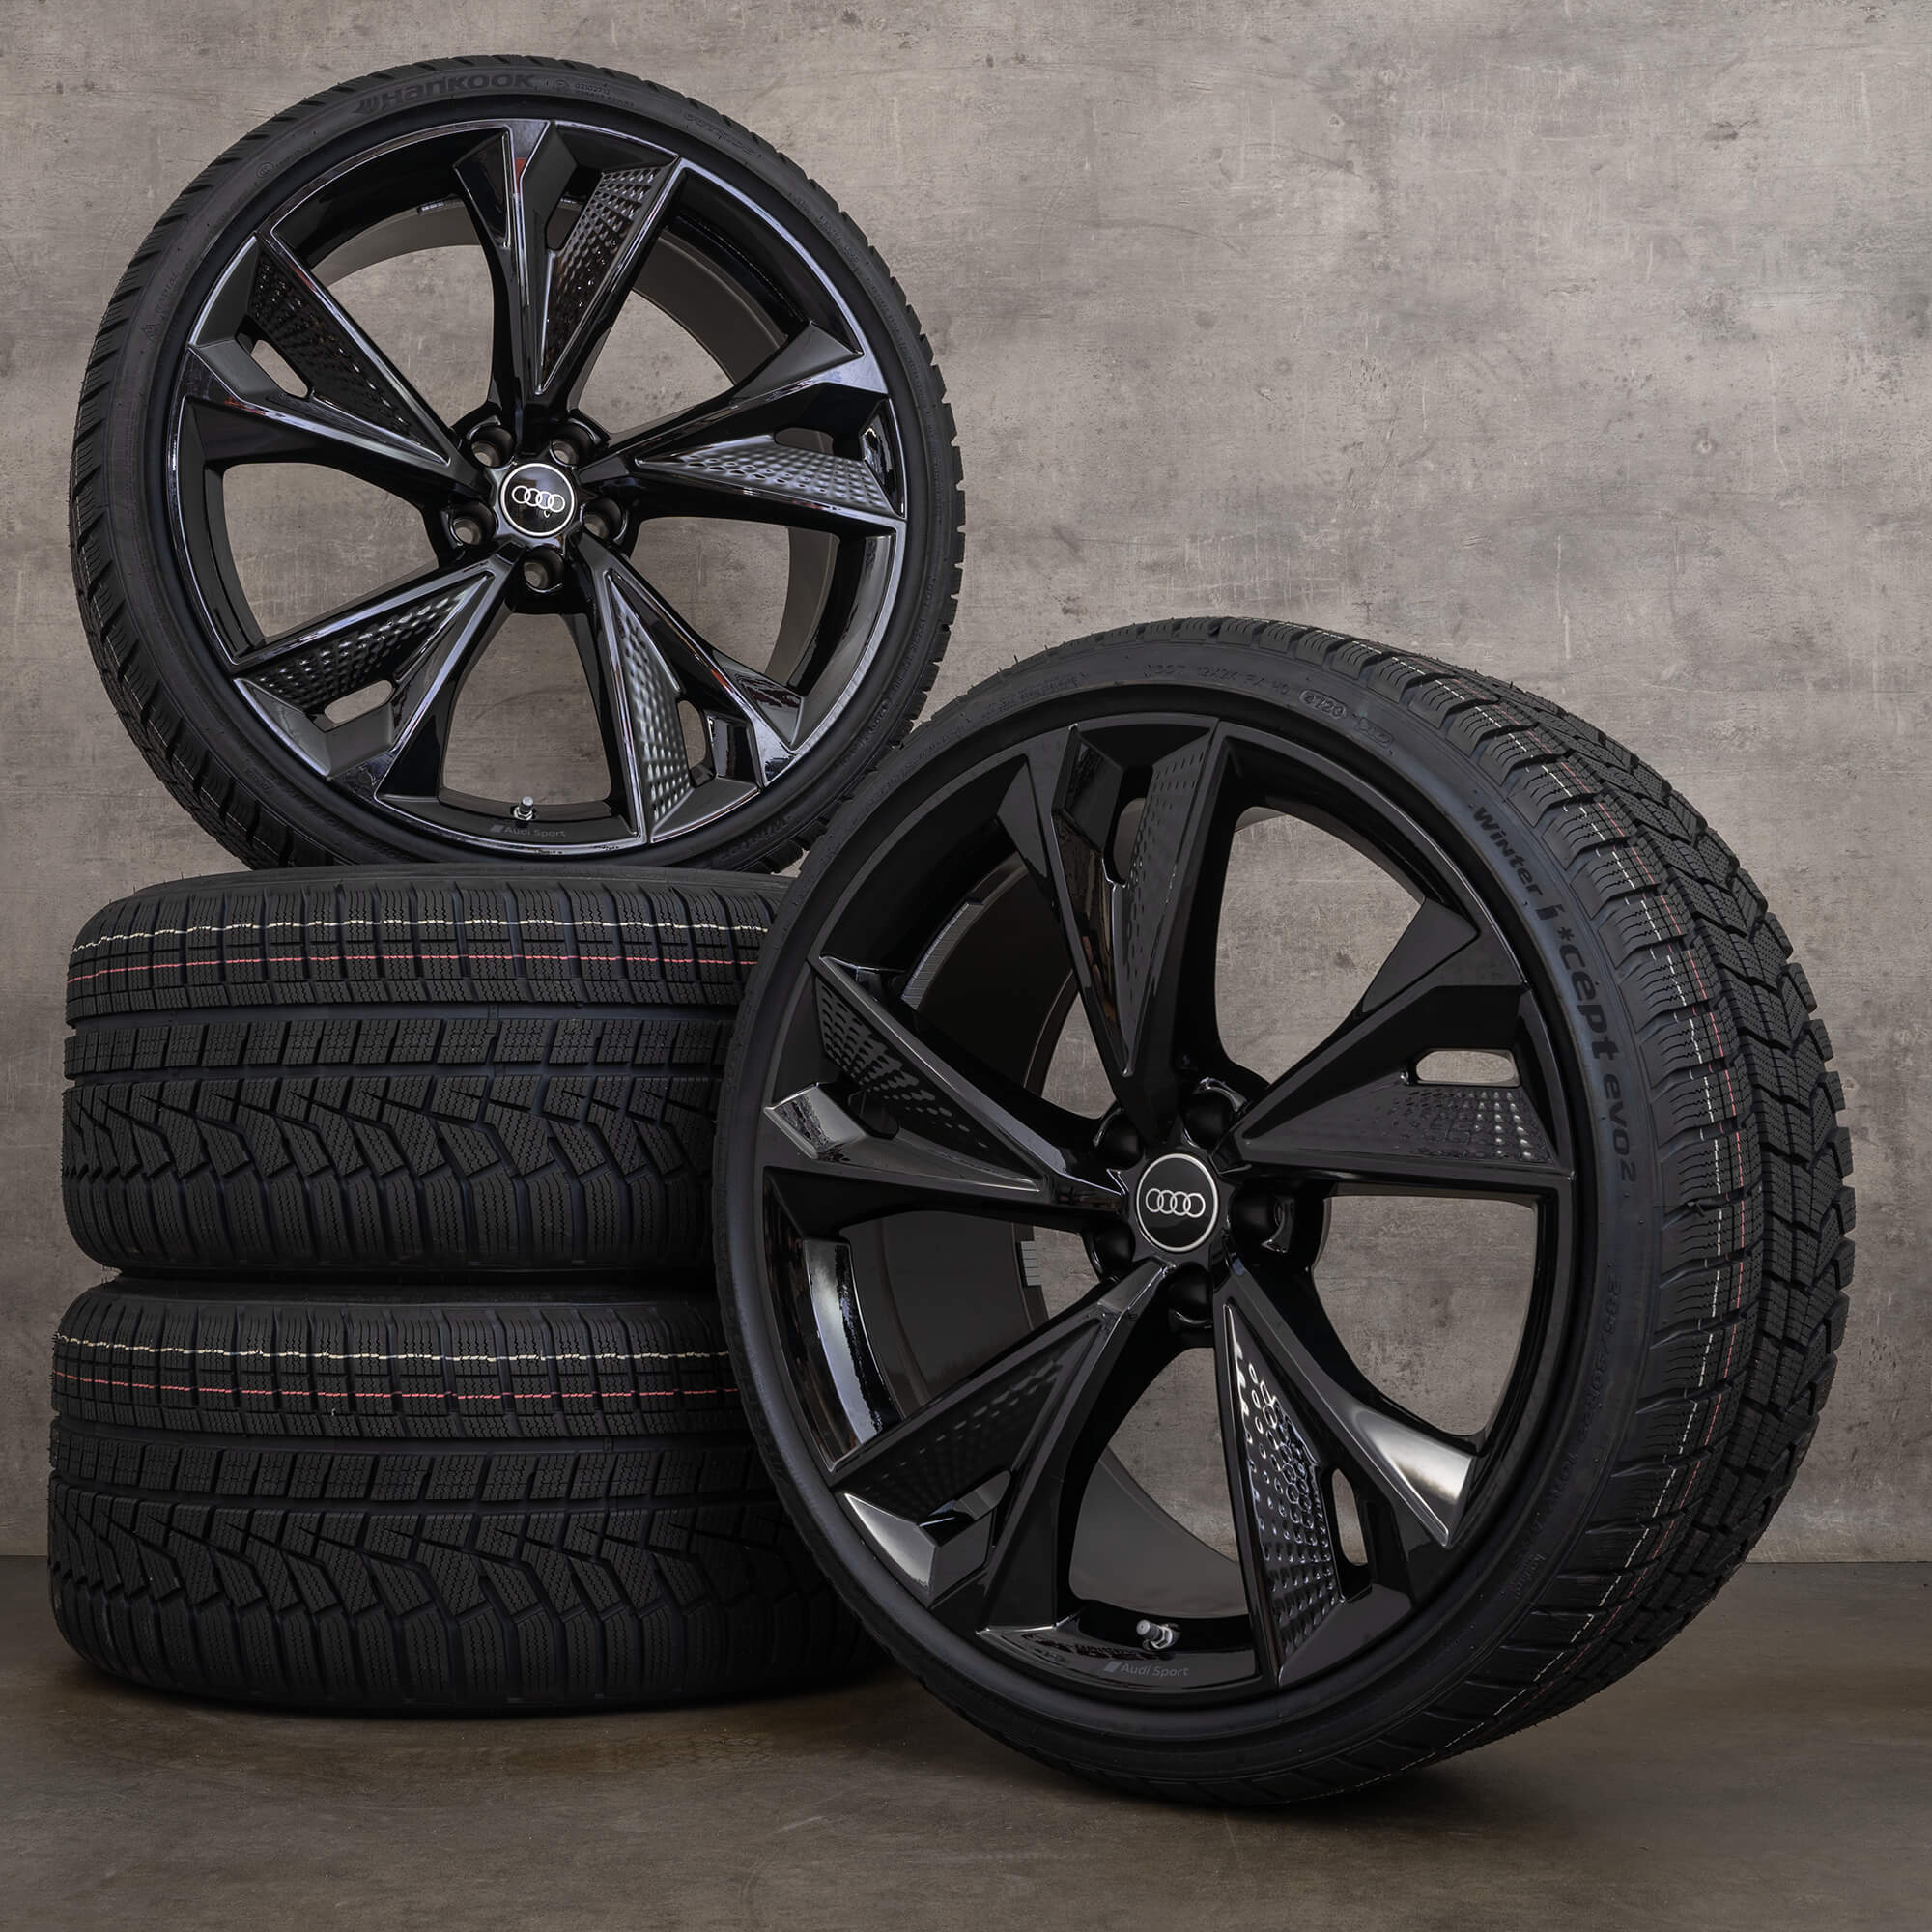 Jantes de pneus verão originais Audi RS6 RS7 4K C8 4K0601025DG trapézio preto